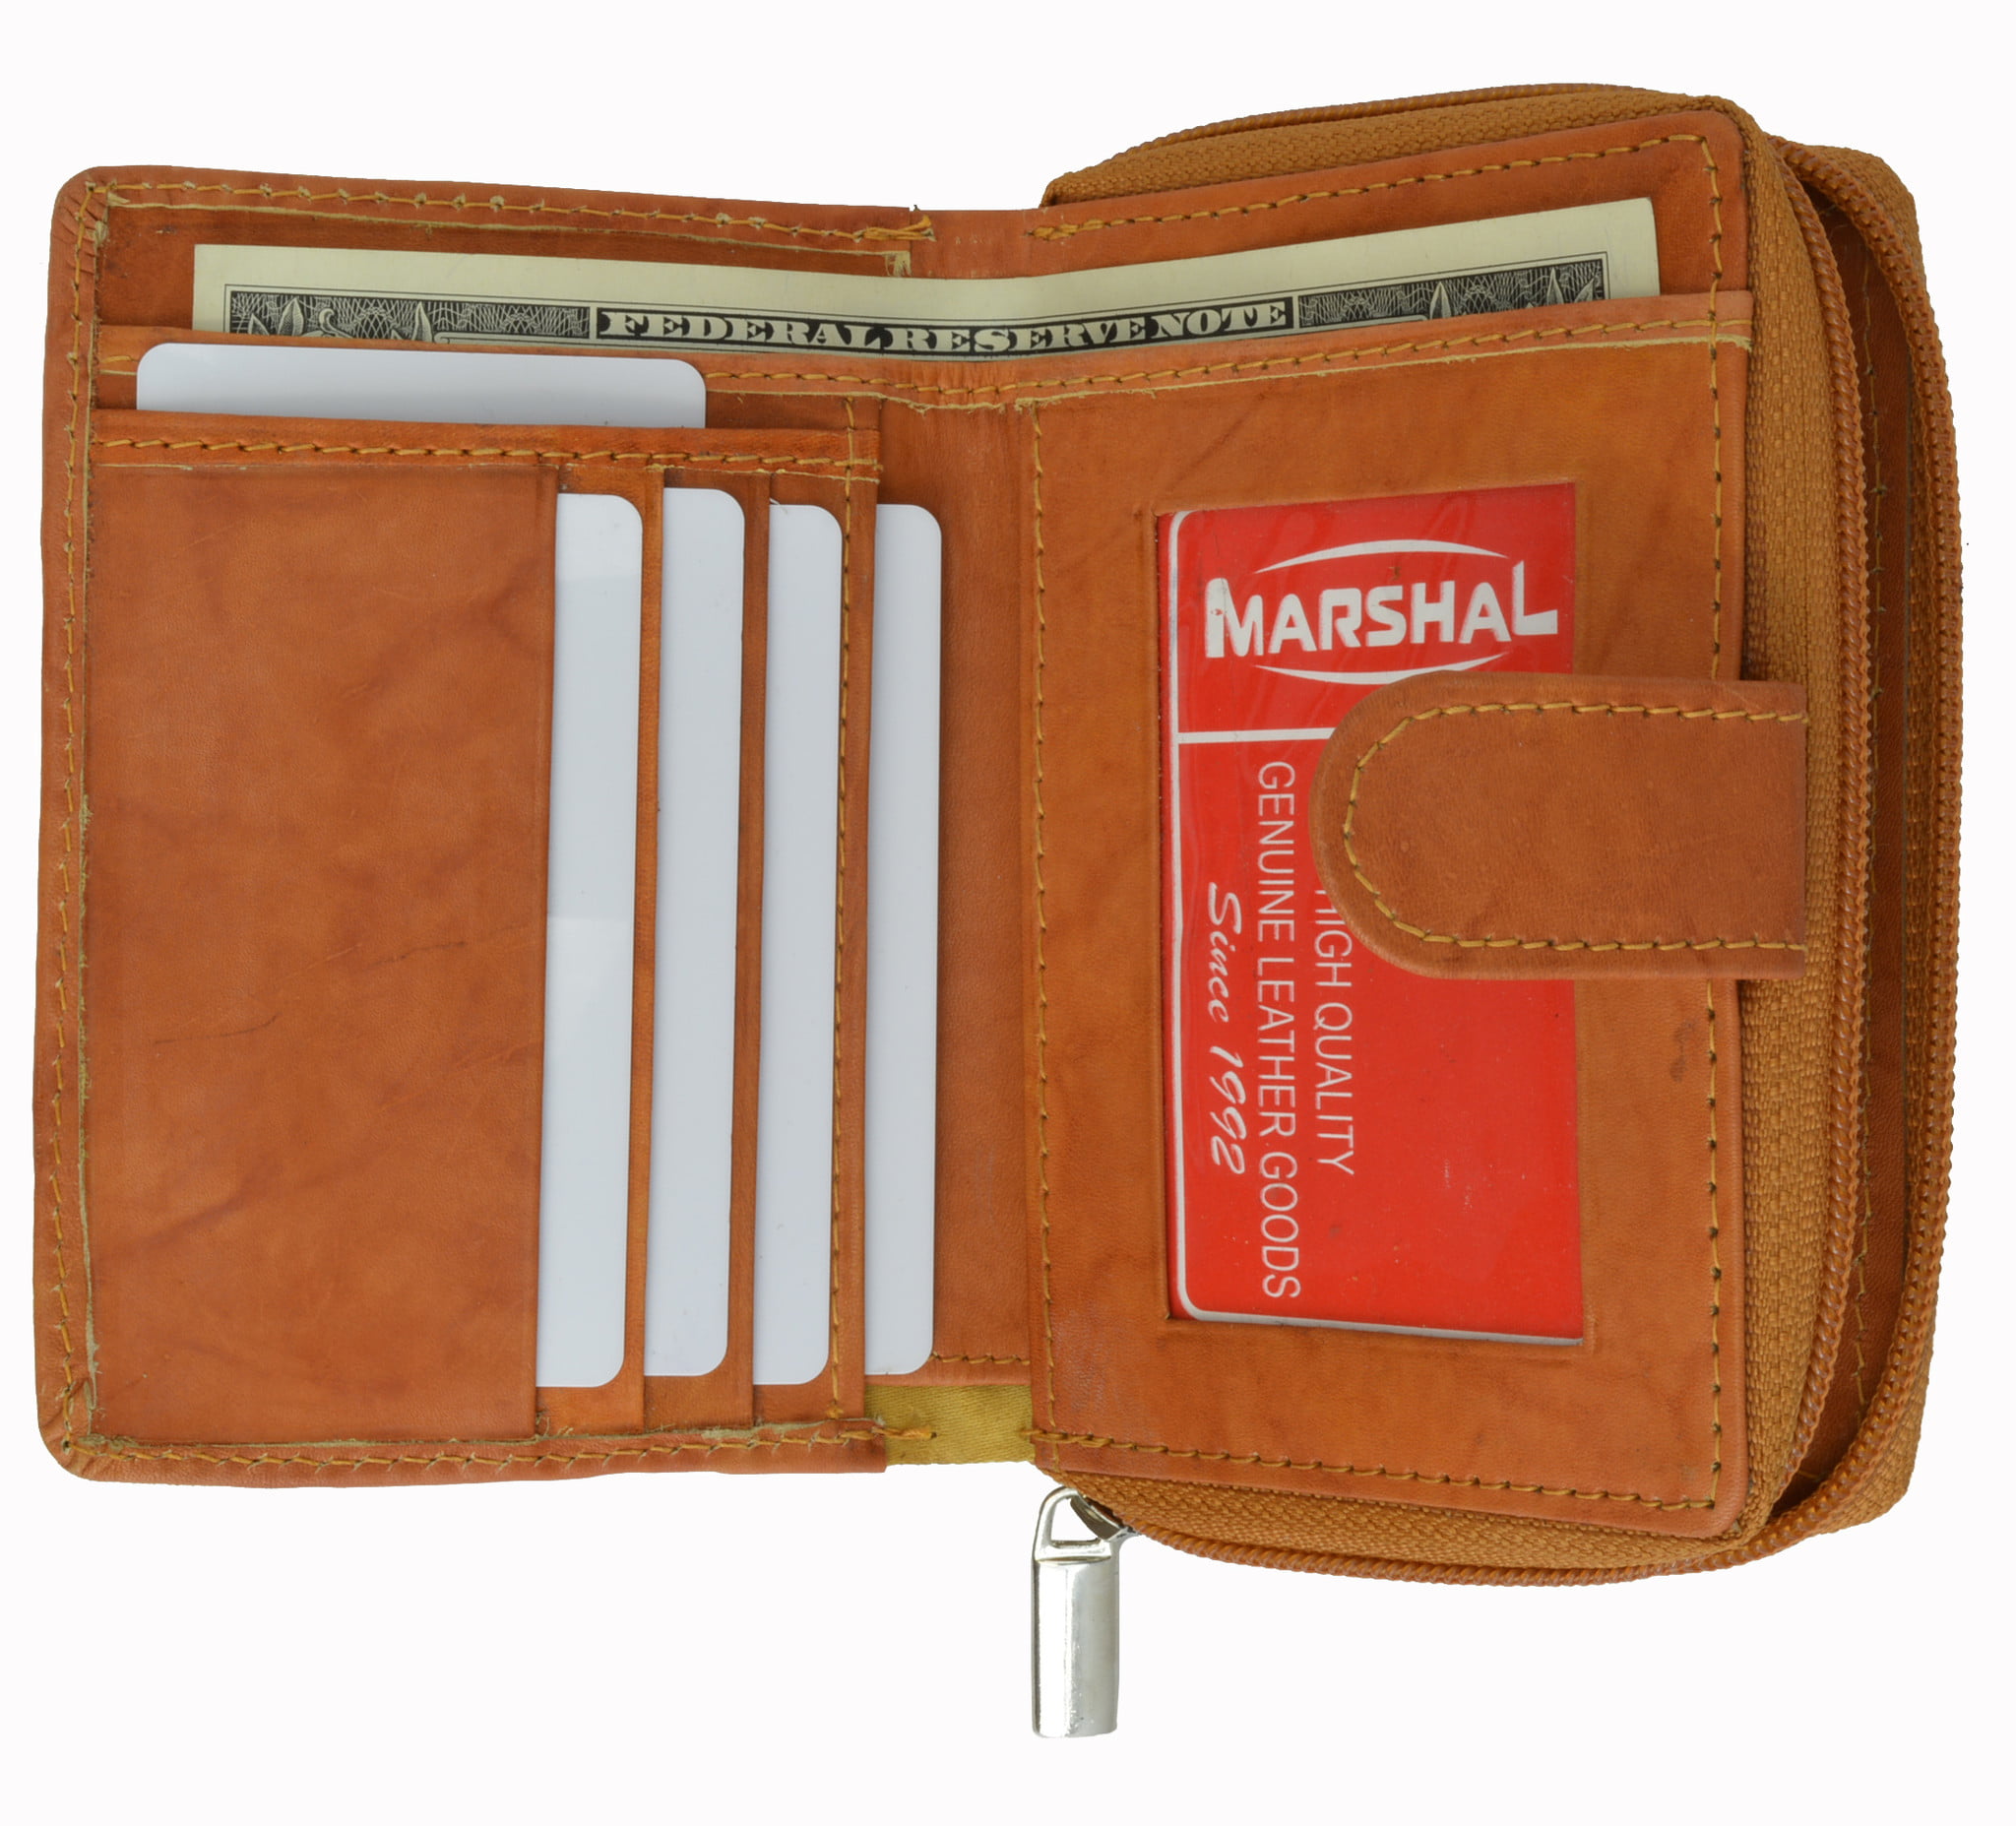 Tan # 4592-L Genuine Cowhide Leather Men's Wallet Brown 